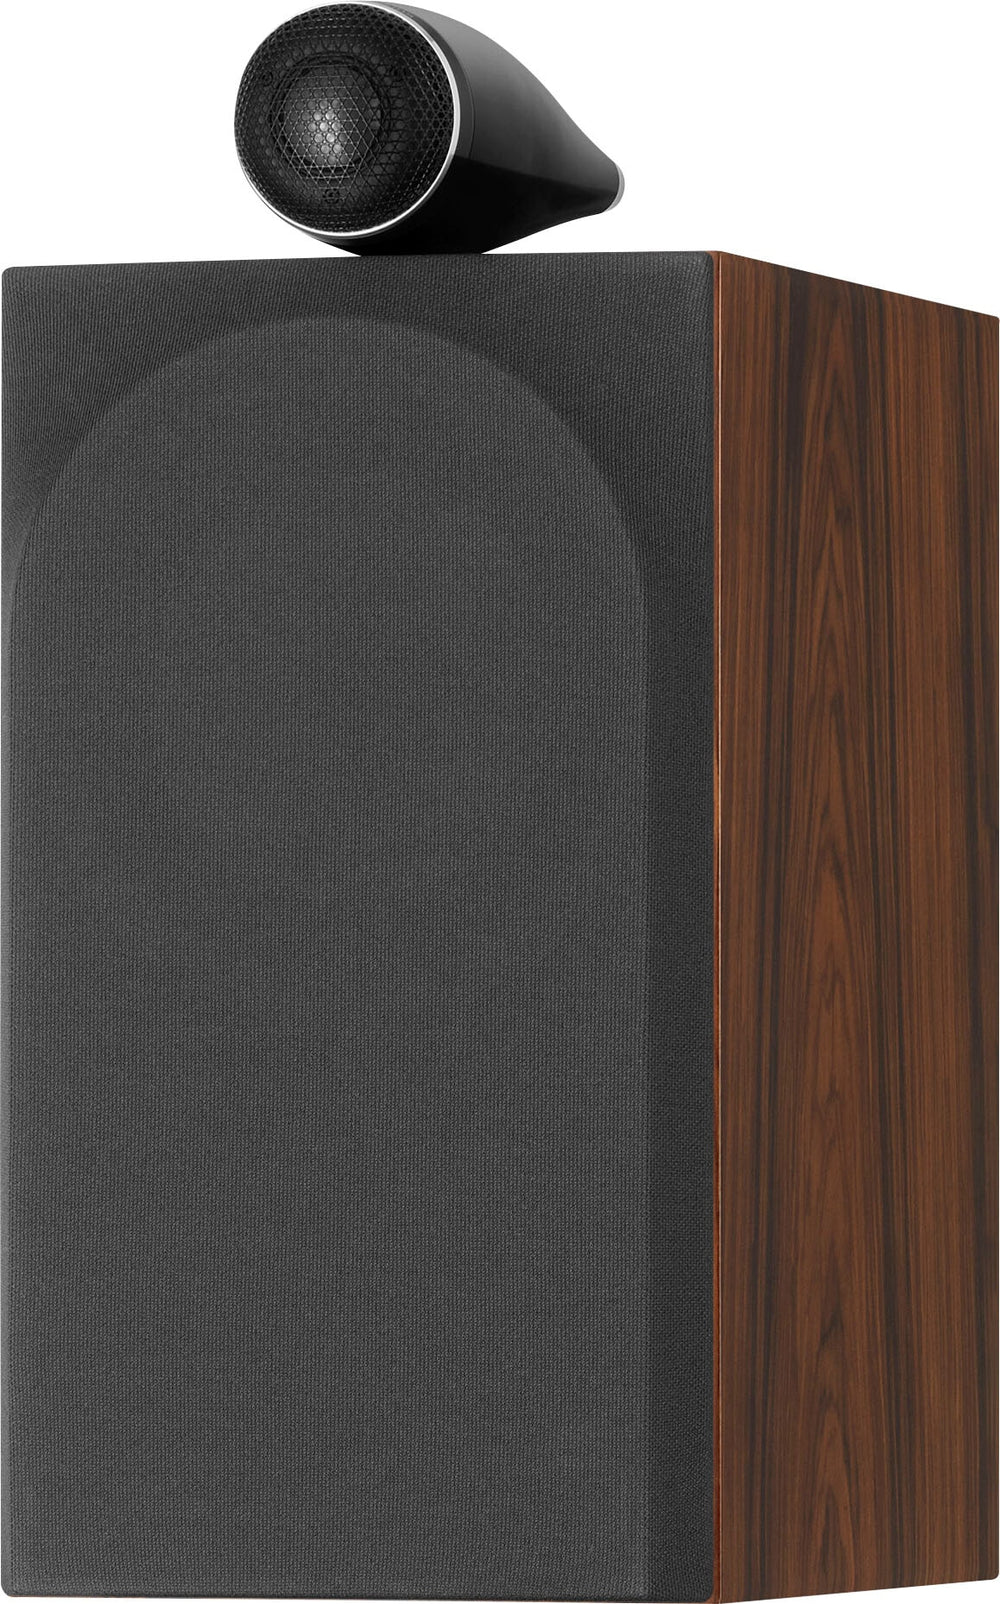 Bowers & Wilkins - 700 Series 3 Bookshelf Speaker w/ Tweeter on top, 6.5" midbass (pair) - Mocha_1